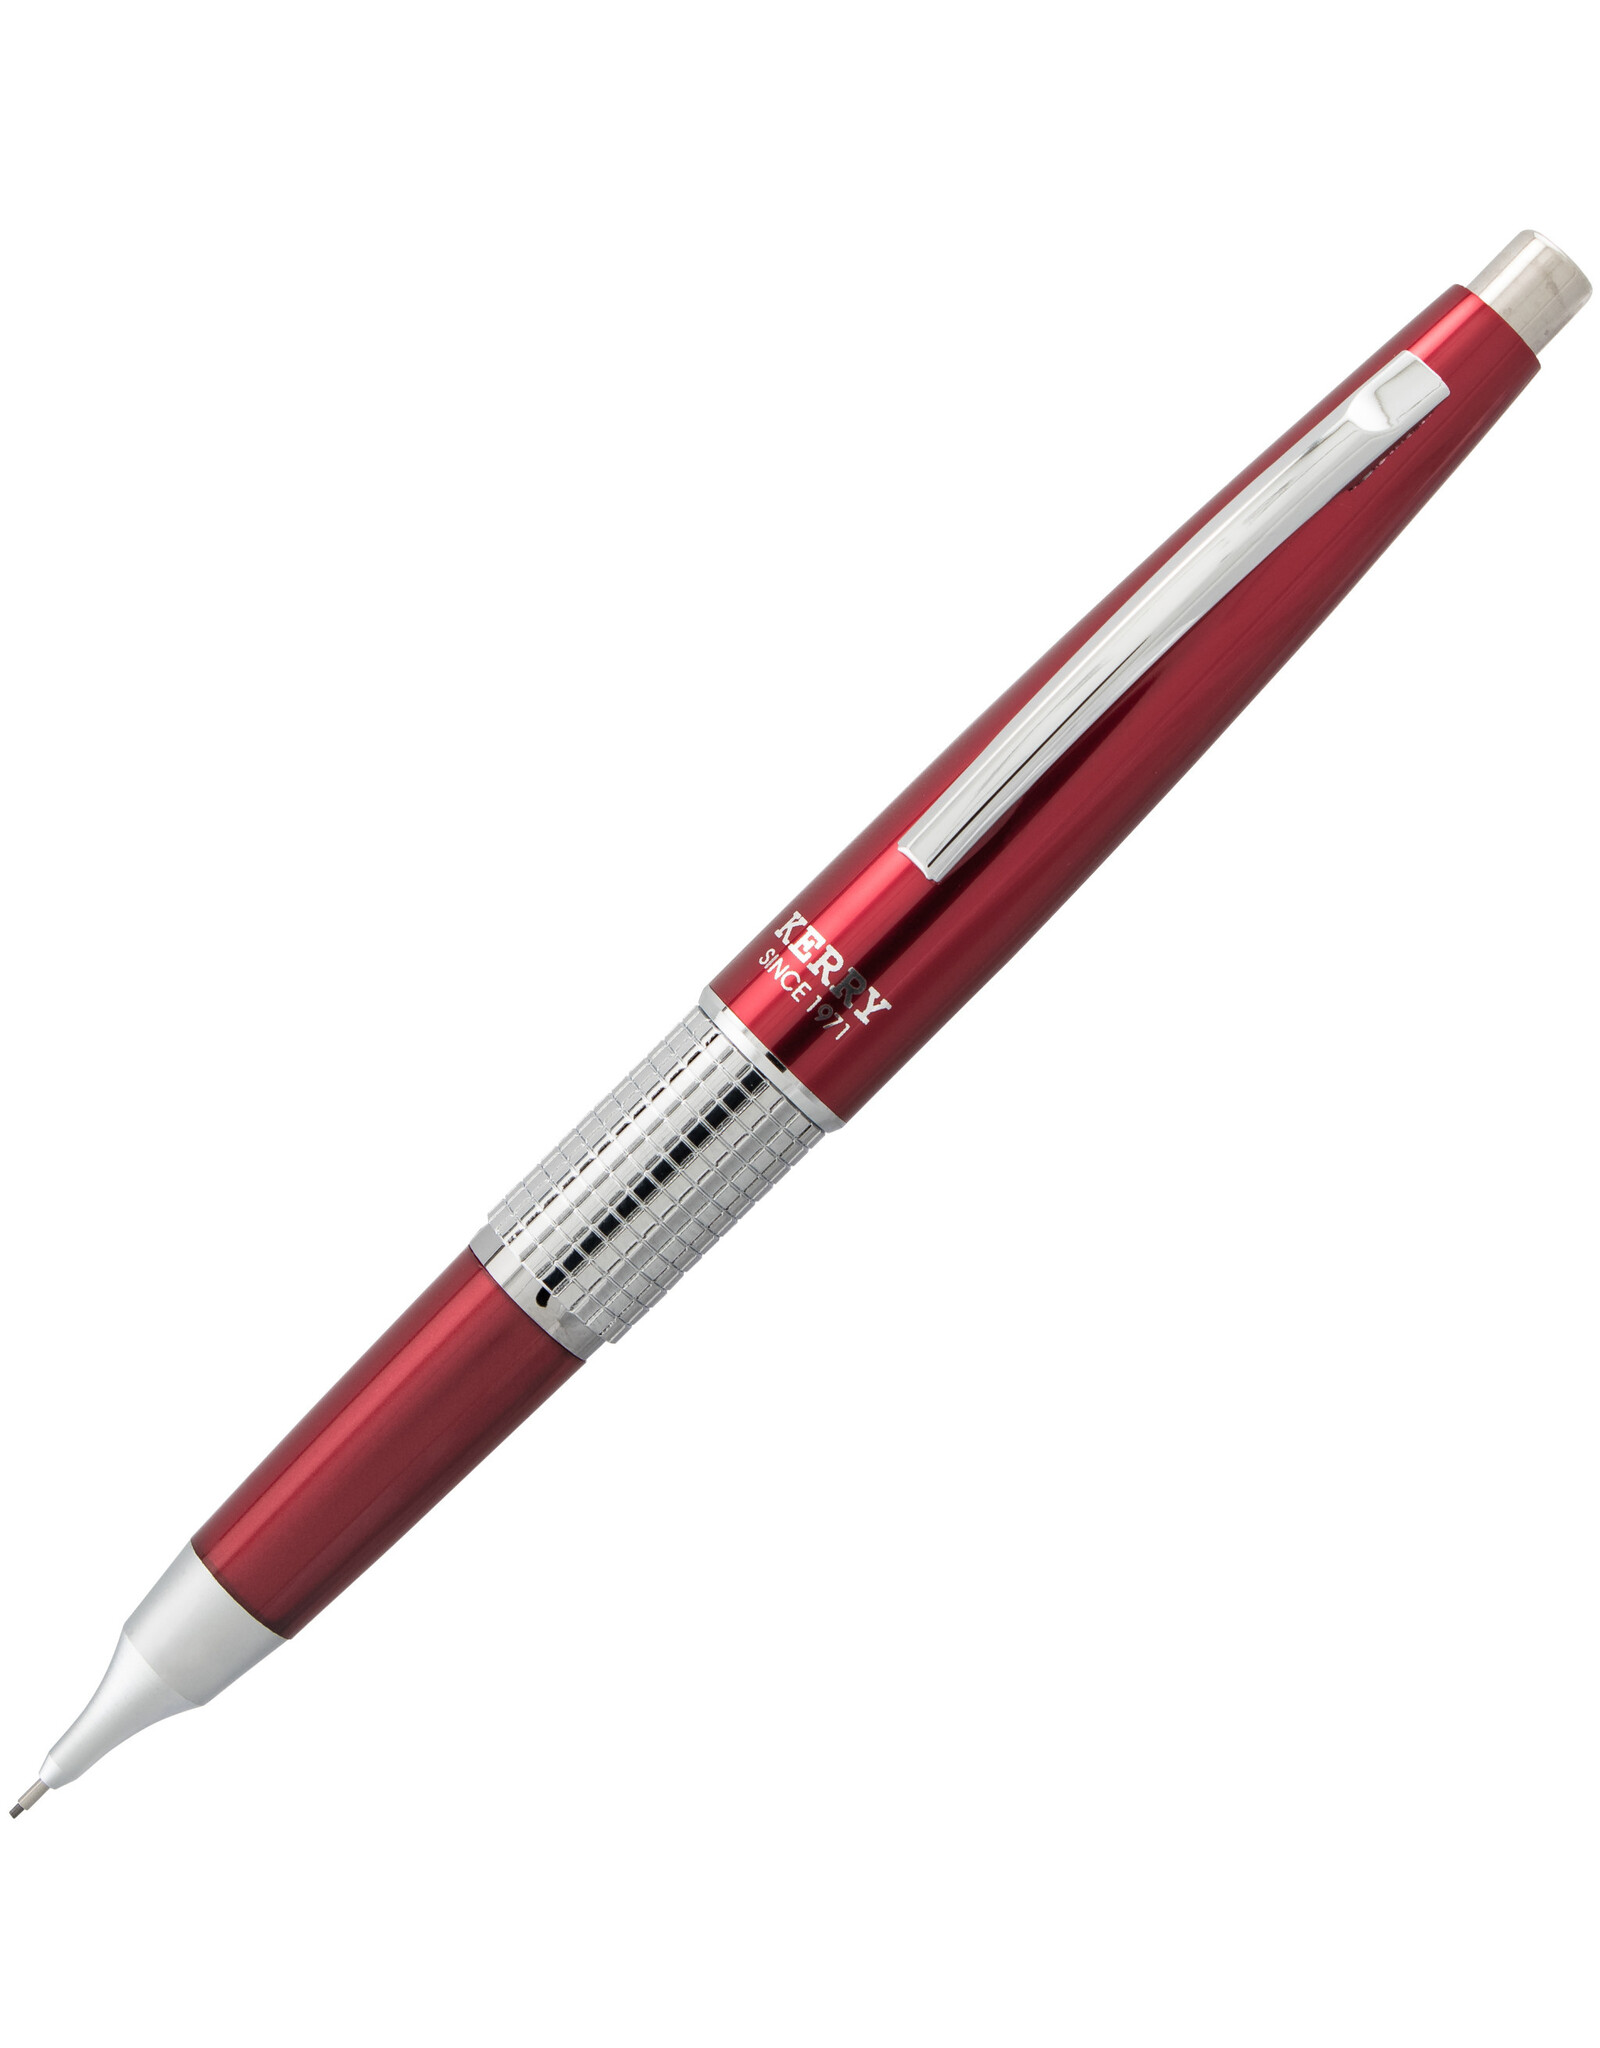 Pentel Pentel Sharp Kerry Mechanical Pencil, Red, 0.5mm